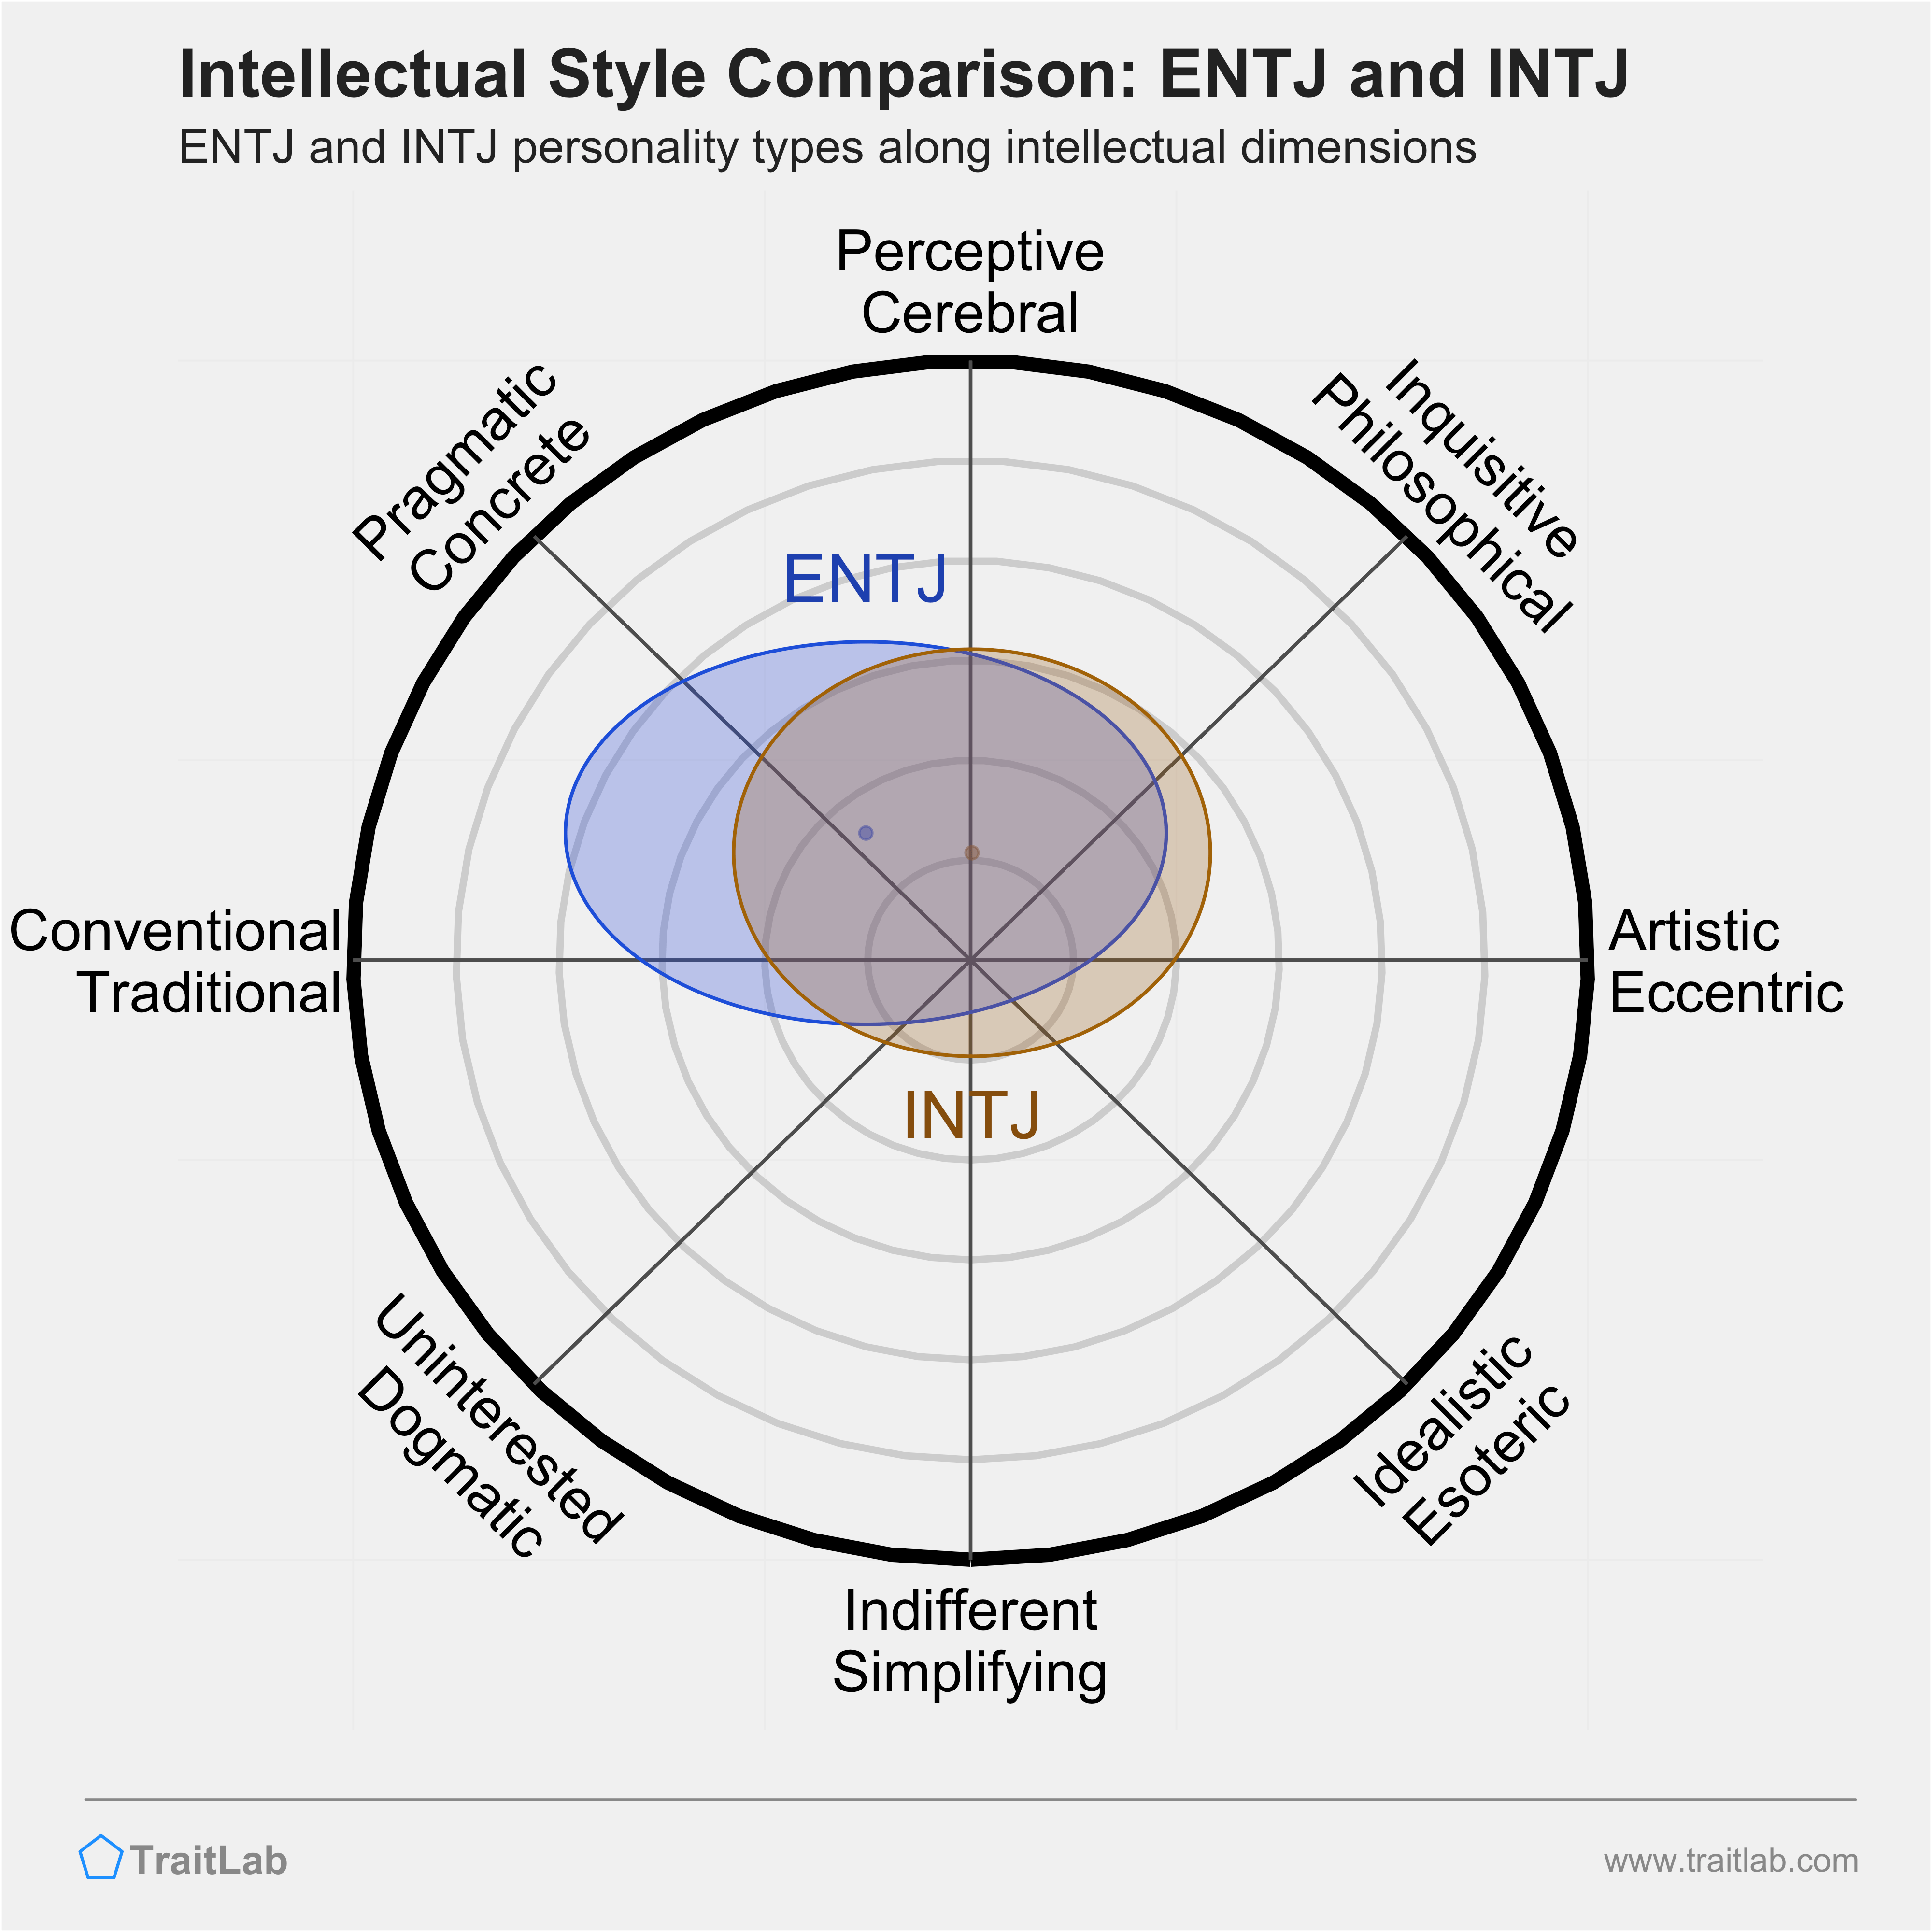 ENTJ and INTJ comparison across intellectual dimensions